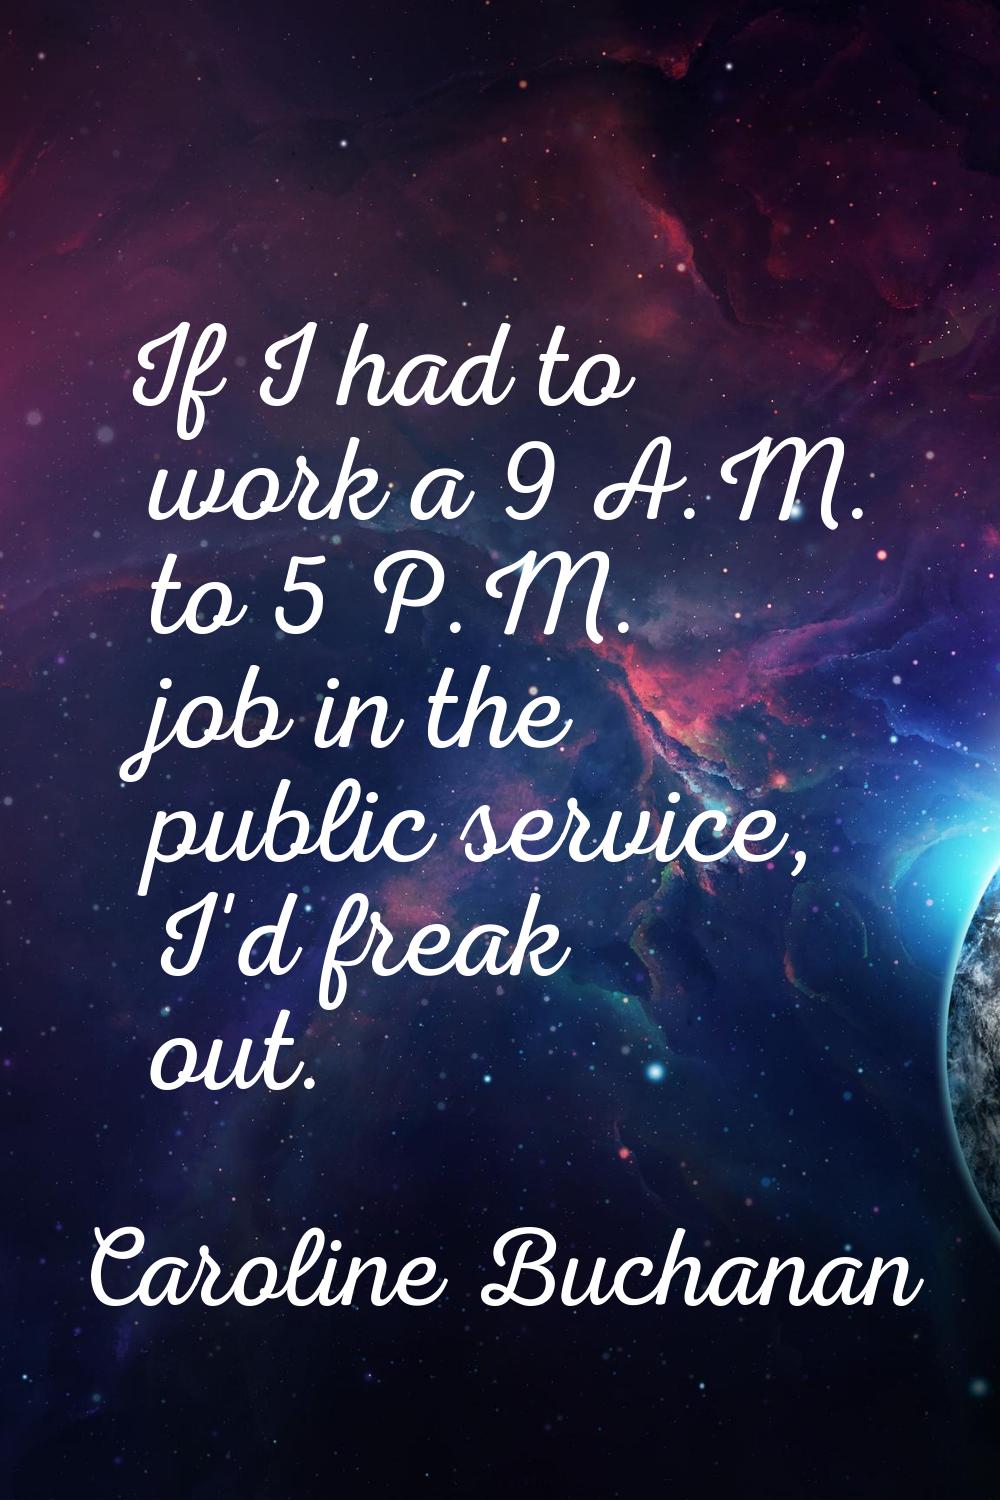 If I had to work a 9 A.M. to 5 P.M. job in the public service, I'd freak out.